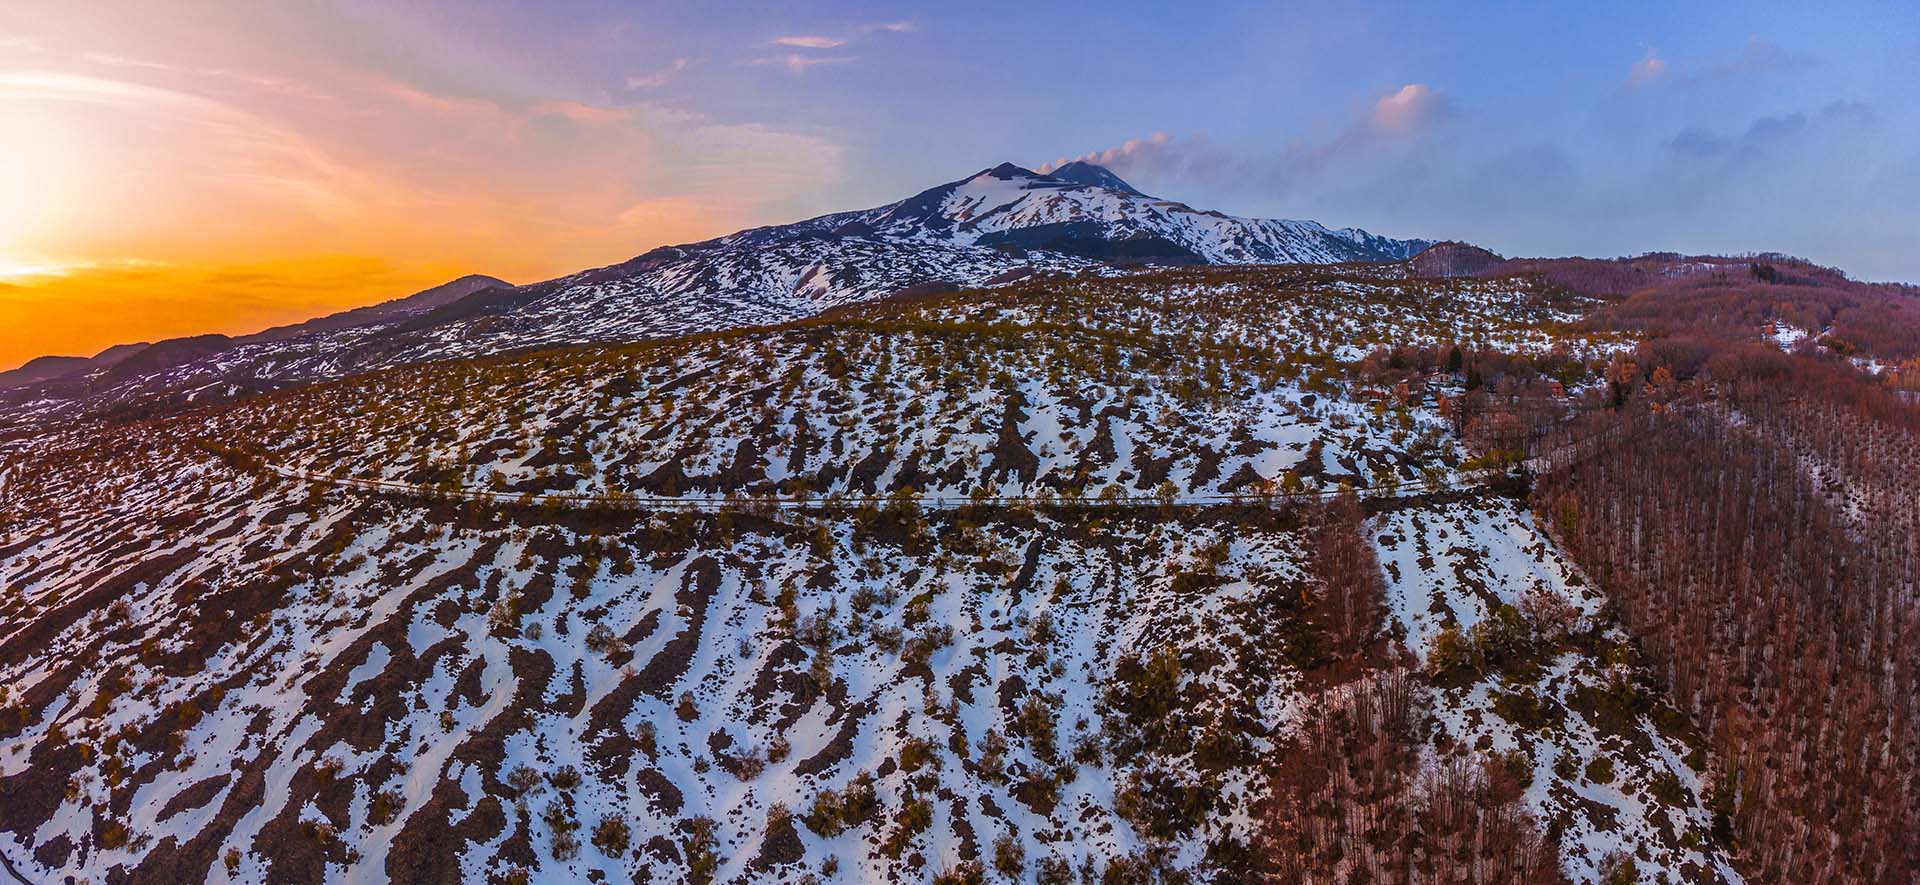 Etna, la zona di Salto del Cane e i crateri sommitali con emissione di fumo nel periodo invernale